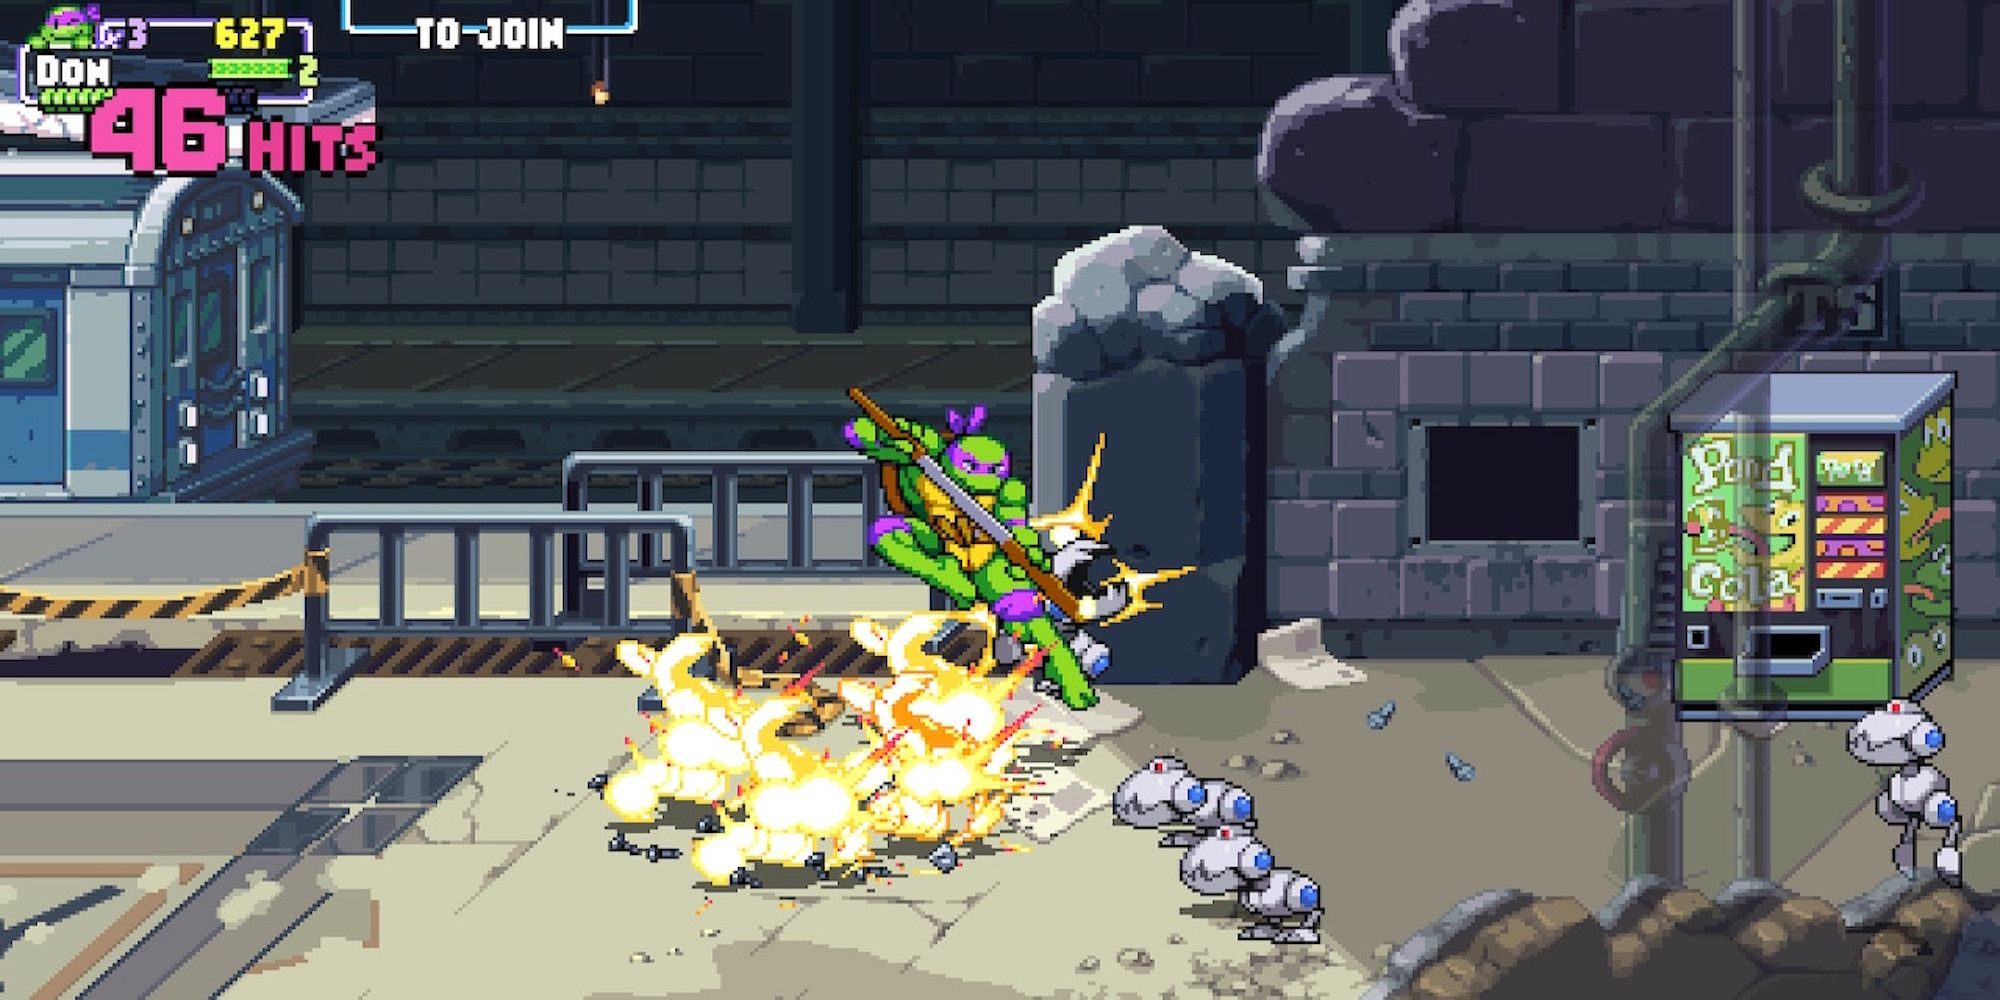 Fighting enemies in Teenage Mutant Ninja Turtles Shredder's Revenge